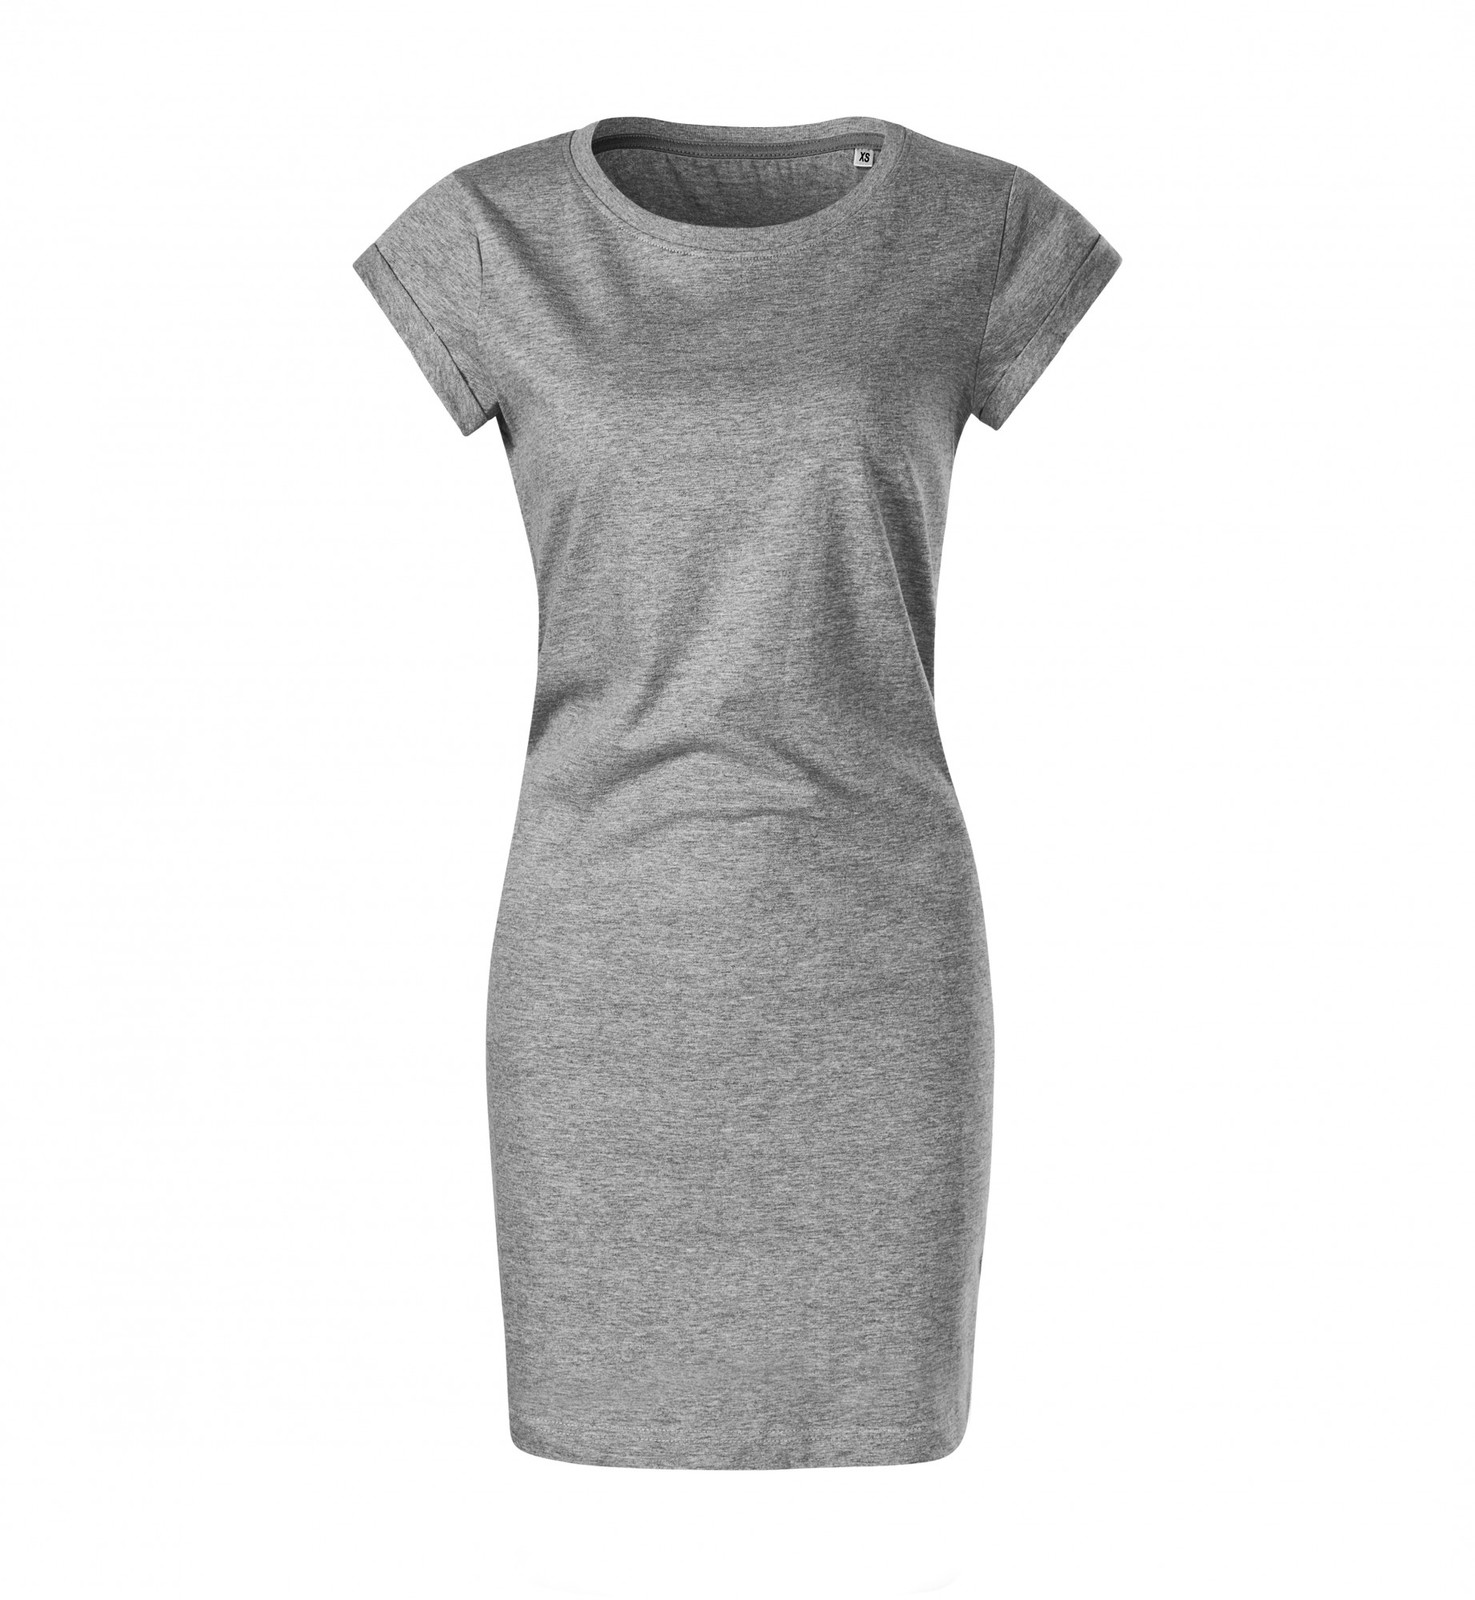 Dámske šaty Malfini Freedom 178 - veľkosť: XXL, farba: tmavosivý melír